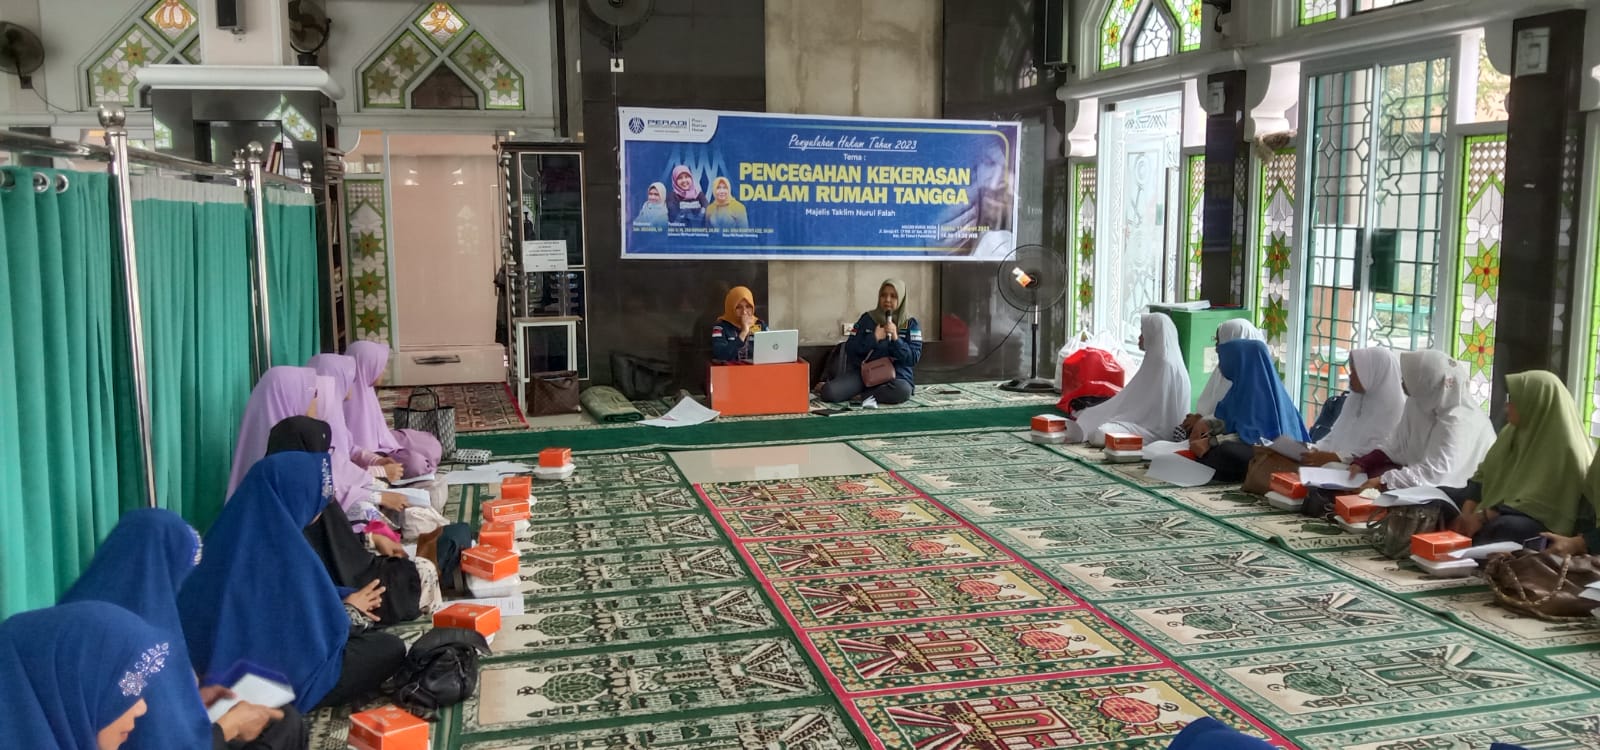 PBH Peradi Palembang Penyuluhan PKDRT di Majelis Taklim Nurul Falah